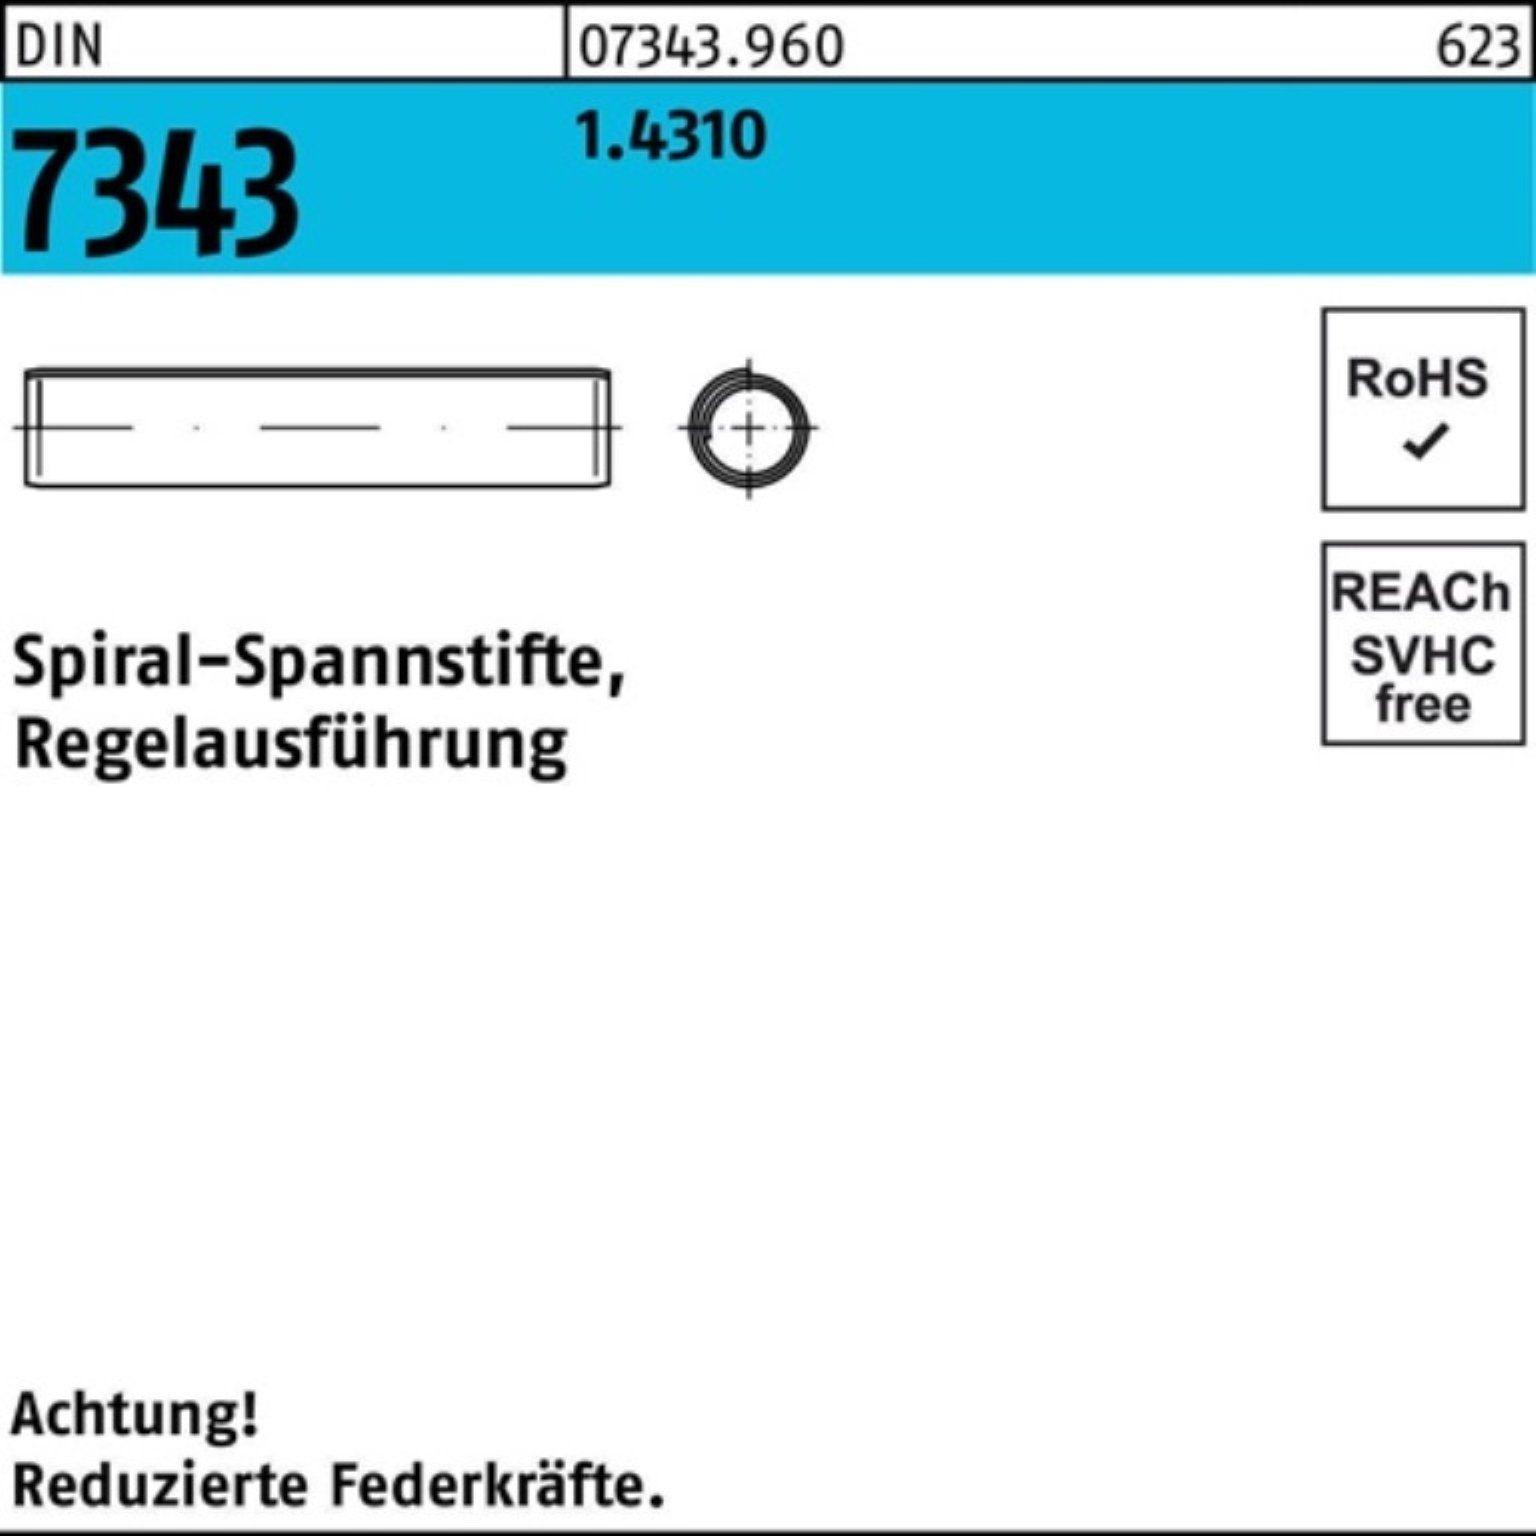 Reyher Spannstift 500er Pack DIN Regelausf. 8750 7343/ISO 1.4310 Spiralspannstift 16 8x